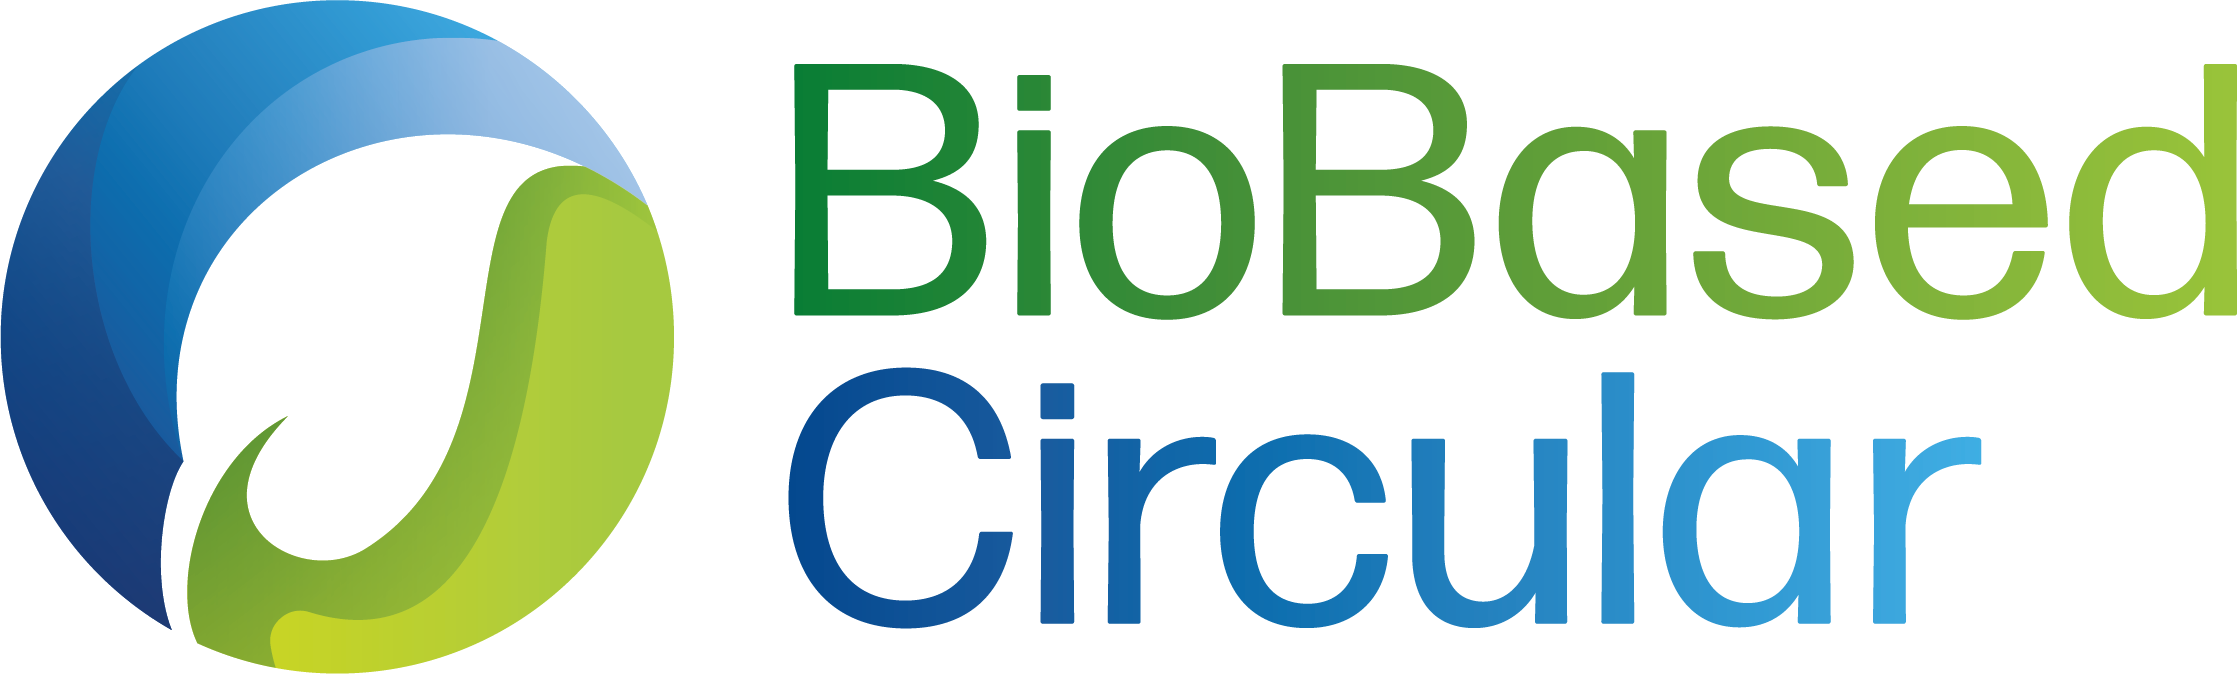 BioBased Circular